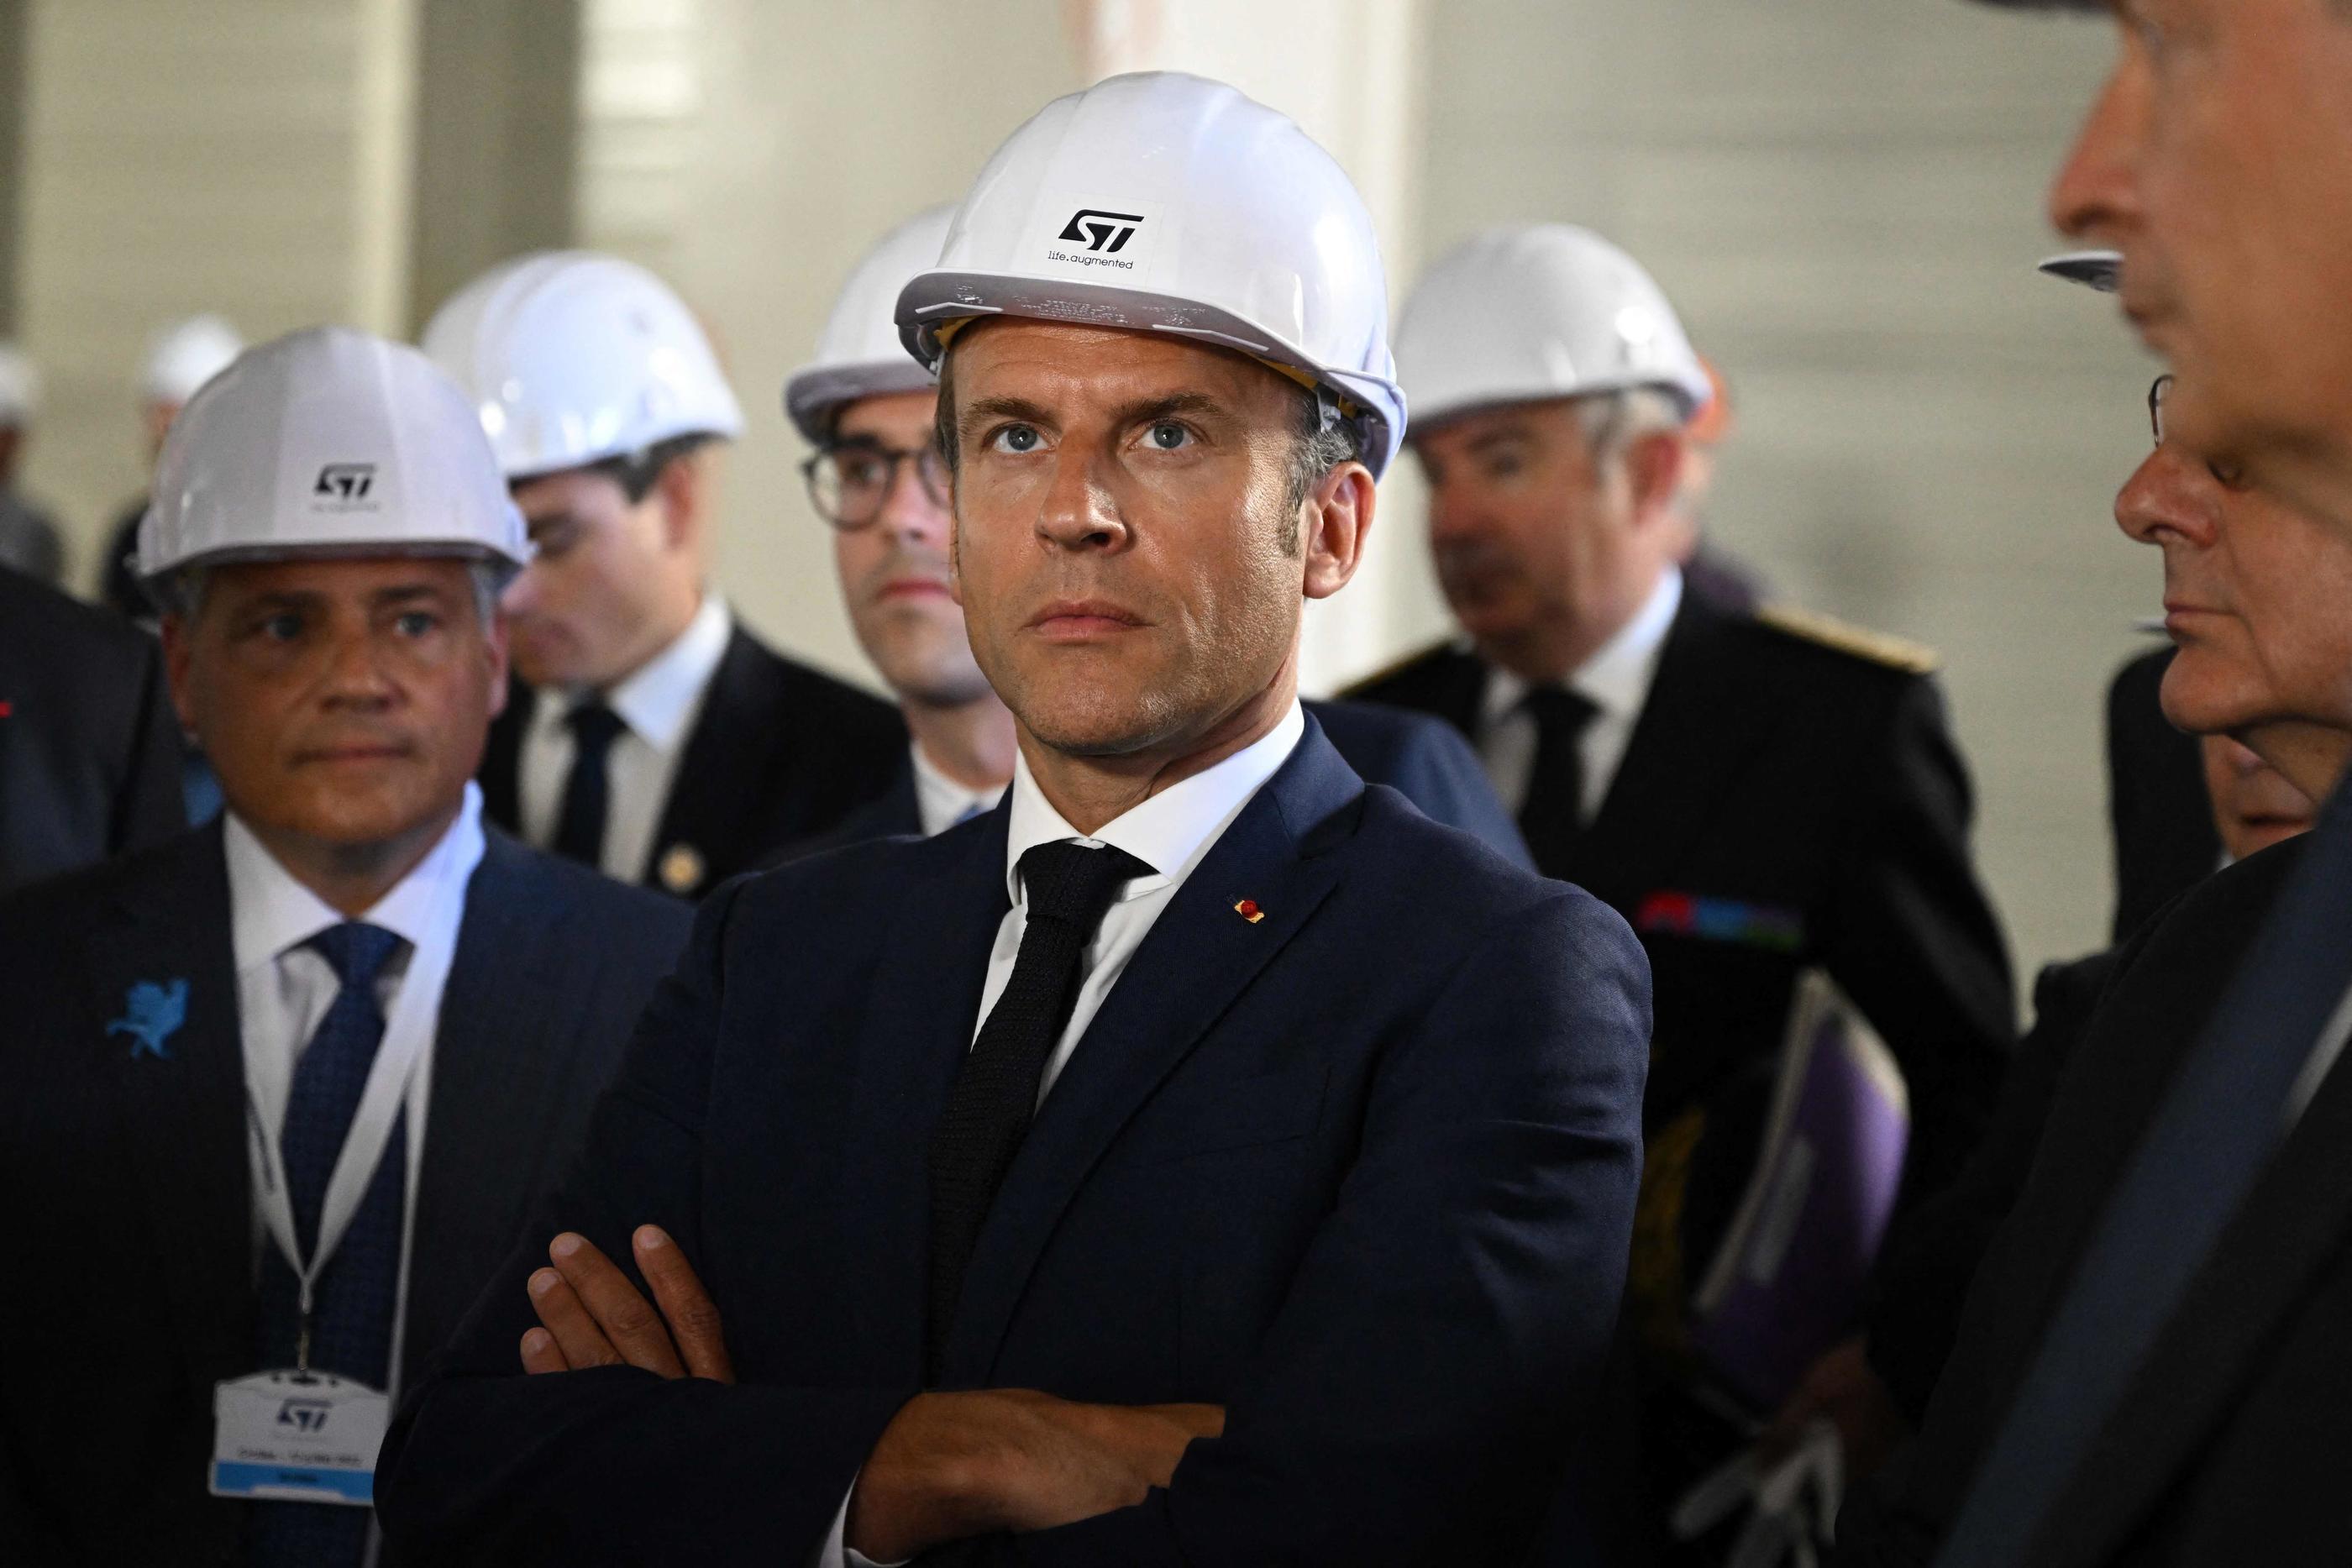 Emmanuel Macron, qui donnera une interview jeudi pour le 14 Juillet, a visité mardi le site STMicroelectronics de Crolles en Isère, mettant l'accent sur le thème de la «fierté française» et répliquant à la polémique des  «Uber files». AFP/pool/Jean-Philippe Ksiazek